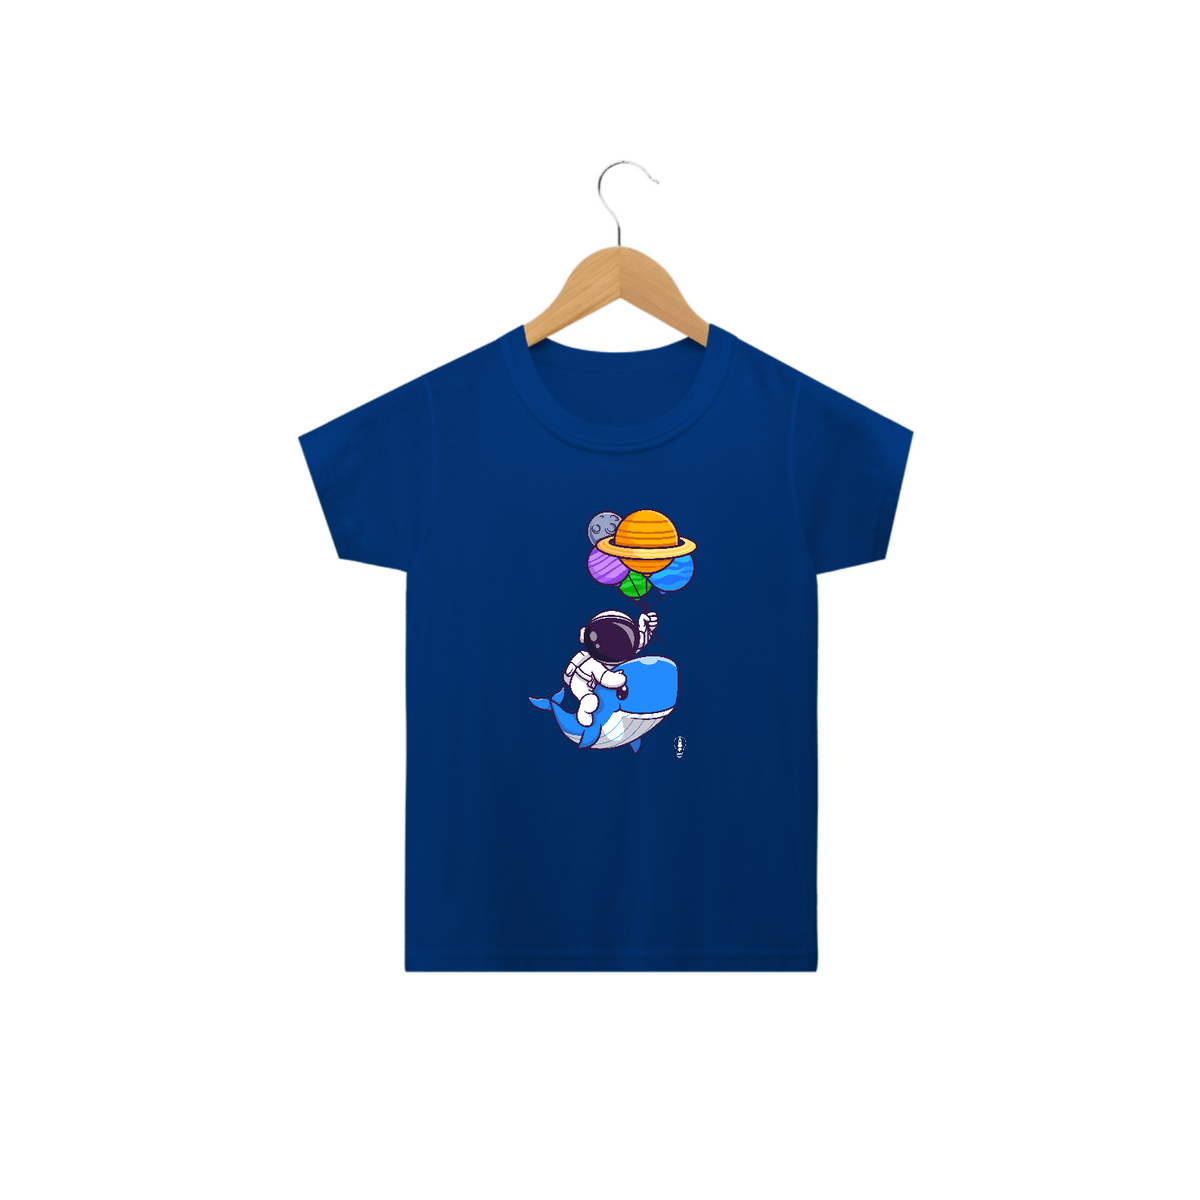 Nome do produto: Camiseta Astronauta Baleia